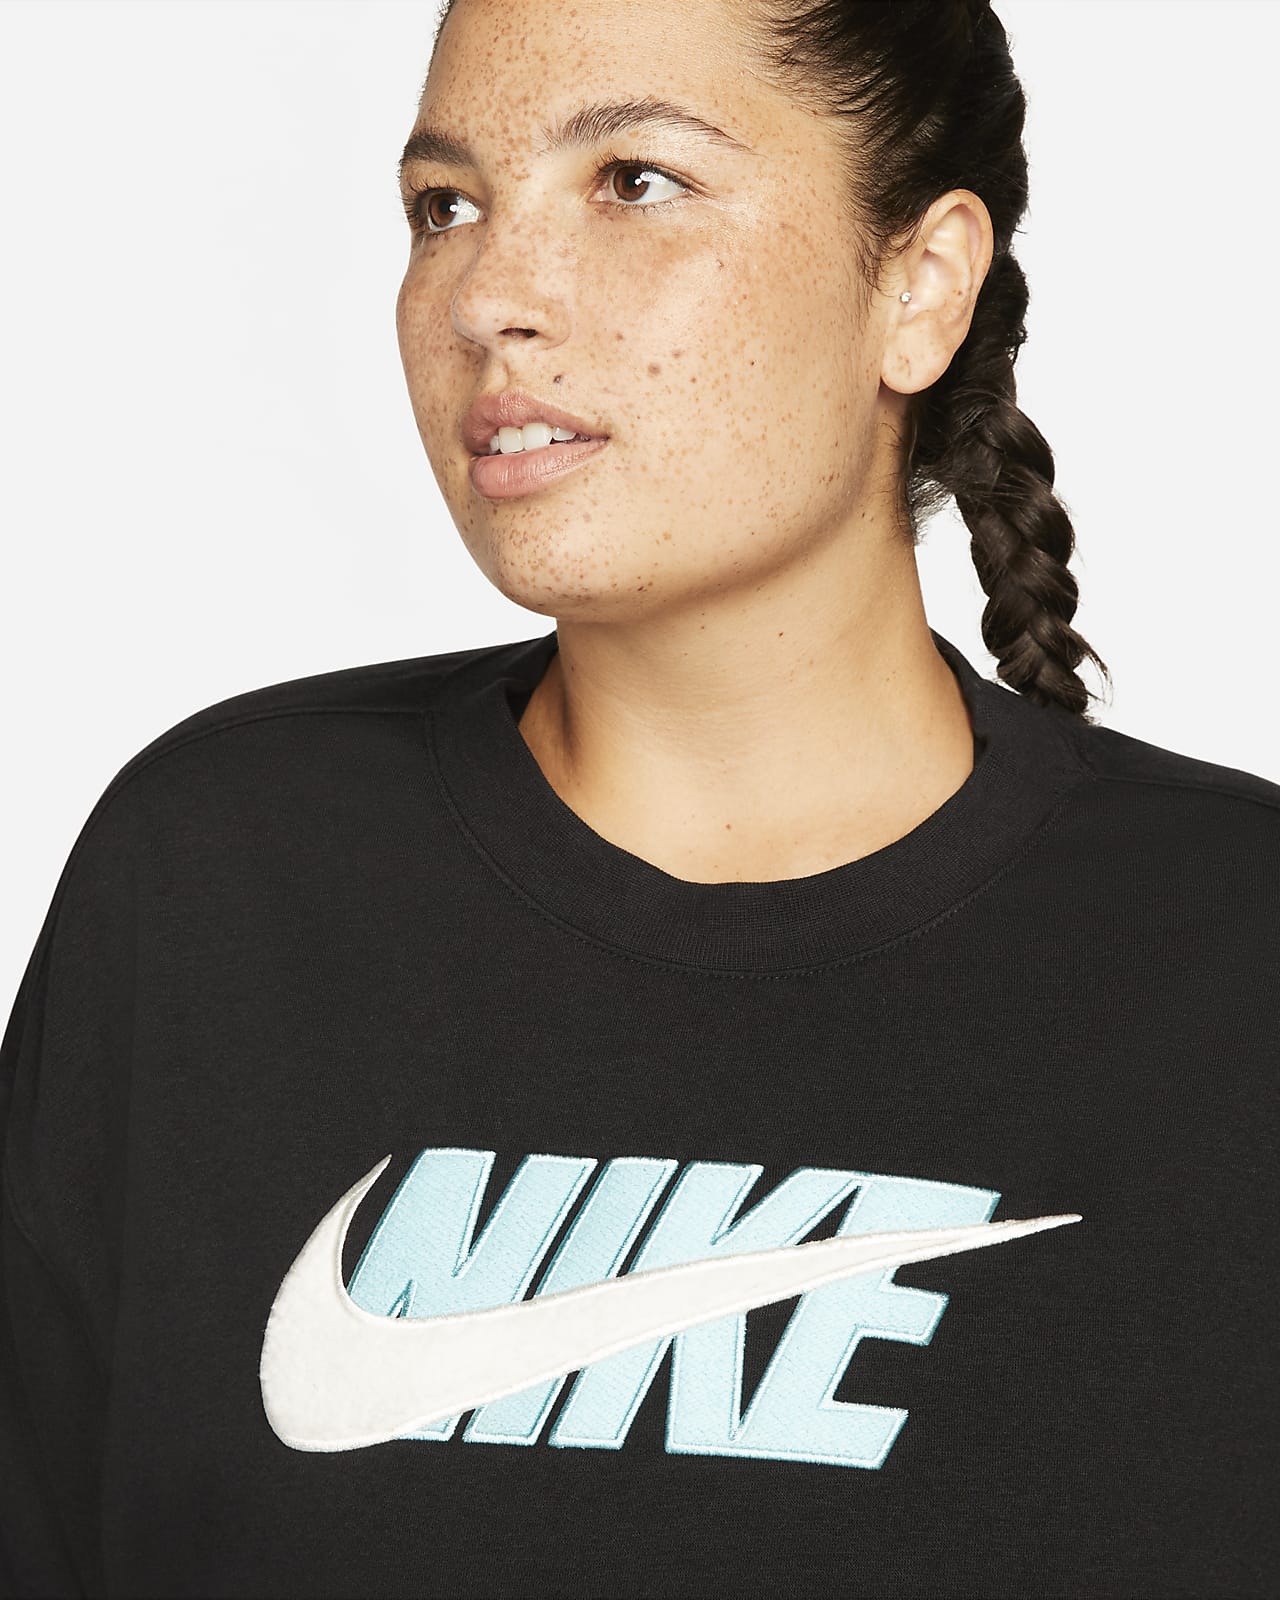 Nike Sportswear Icon Clash Women's Oversized Fleece Crew (Plus Size)